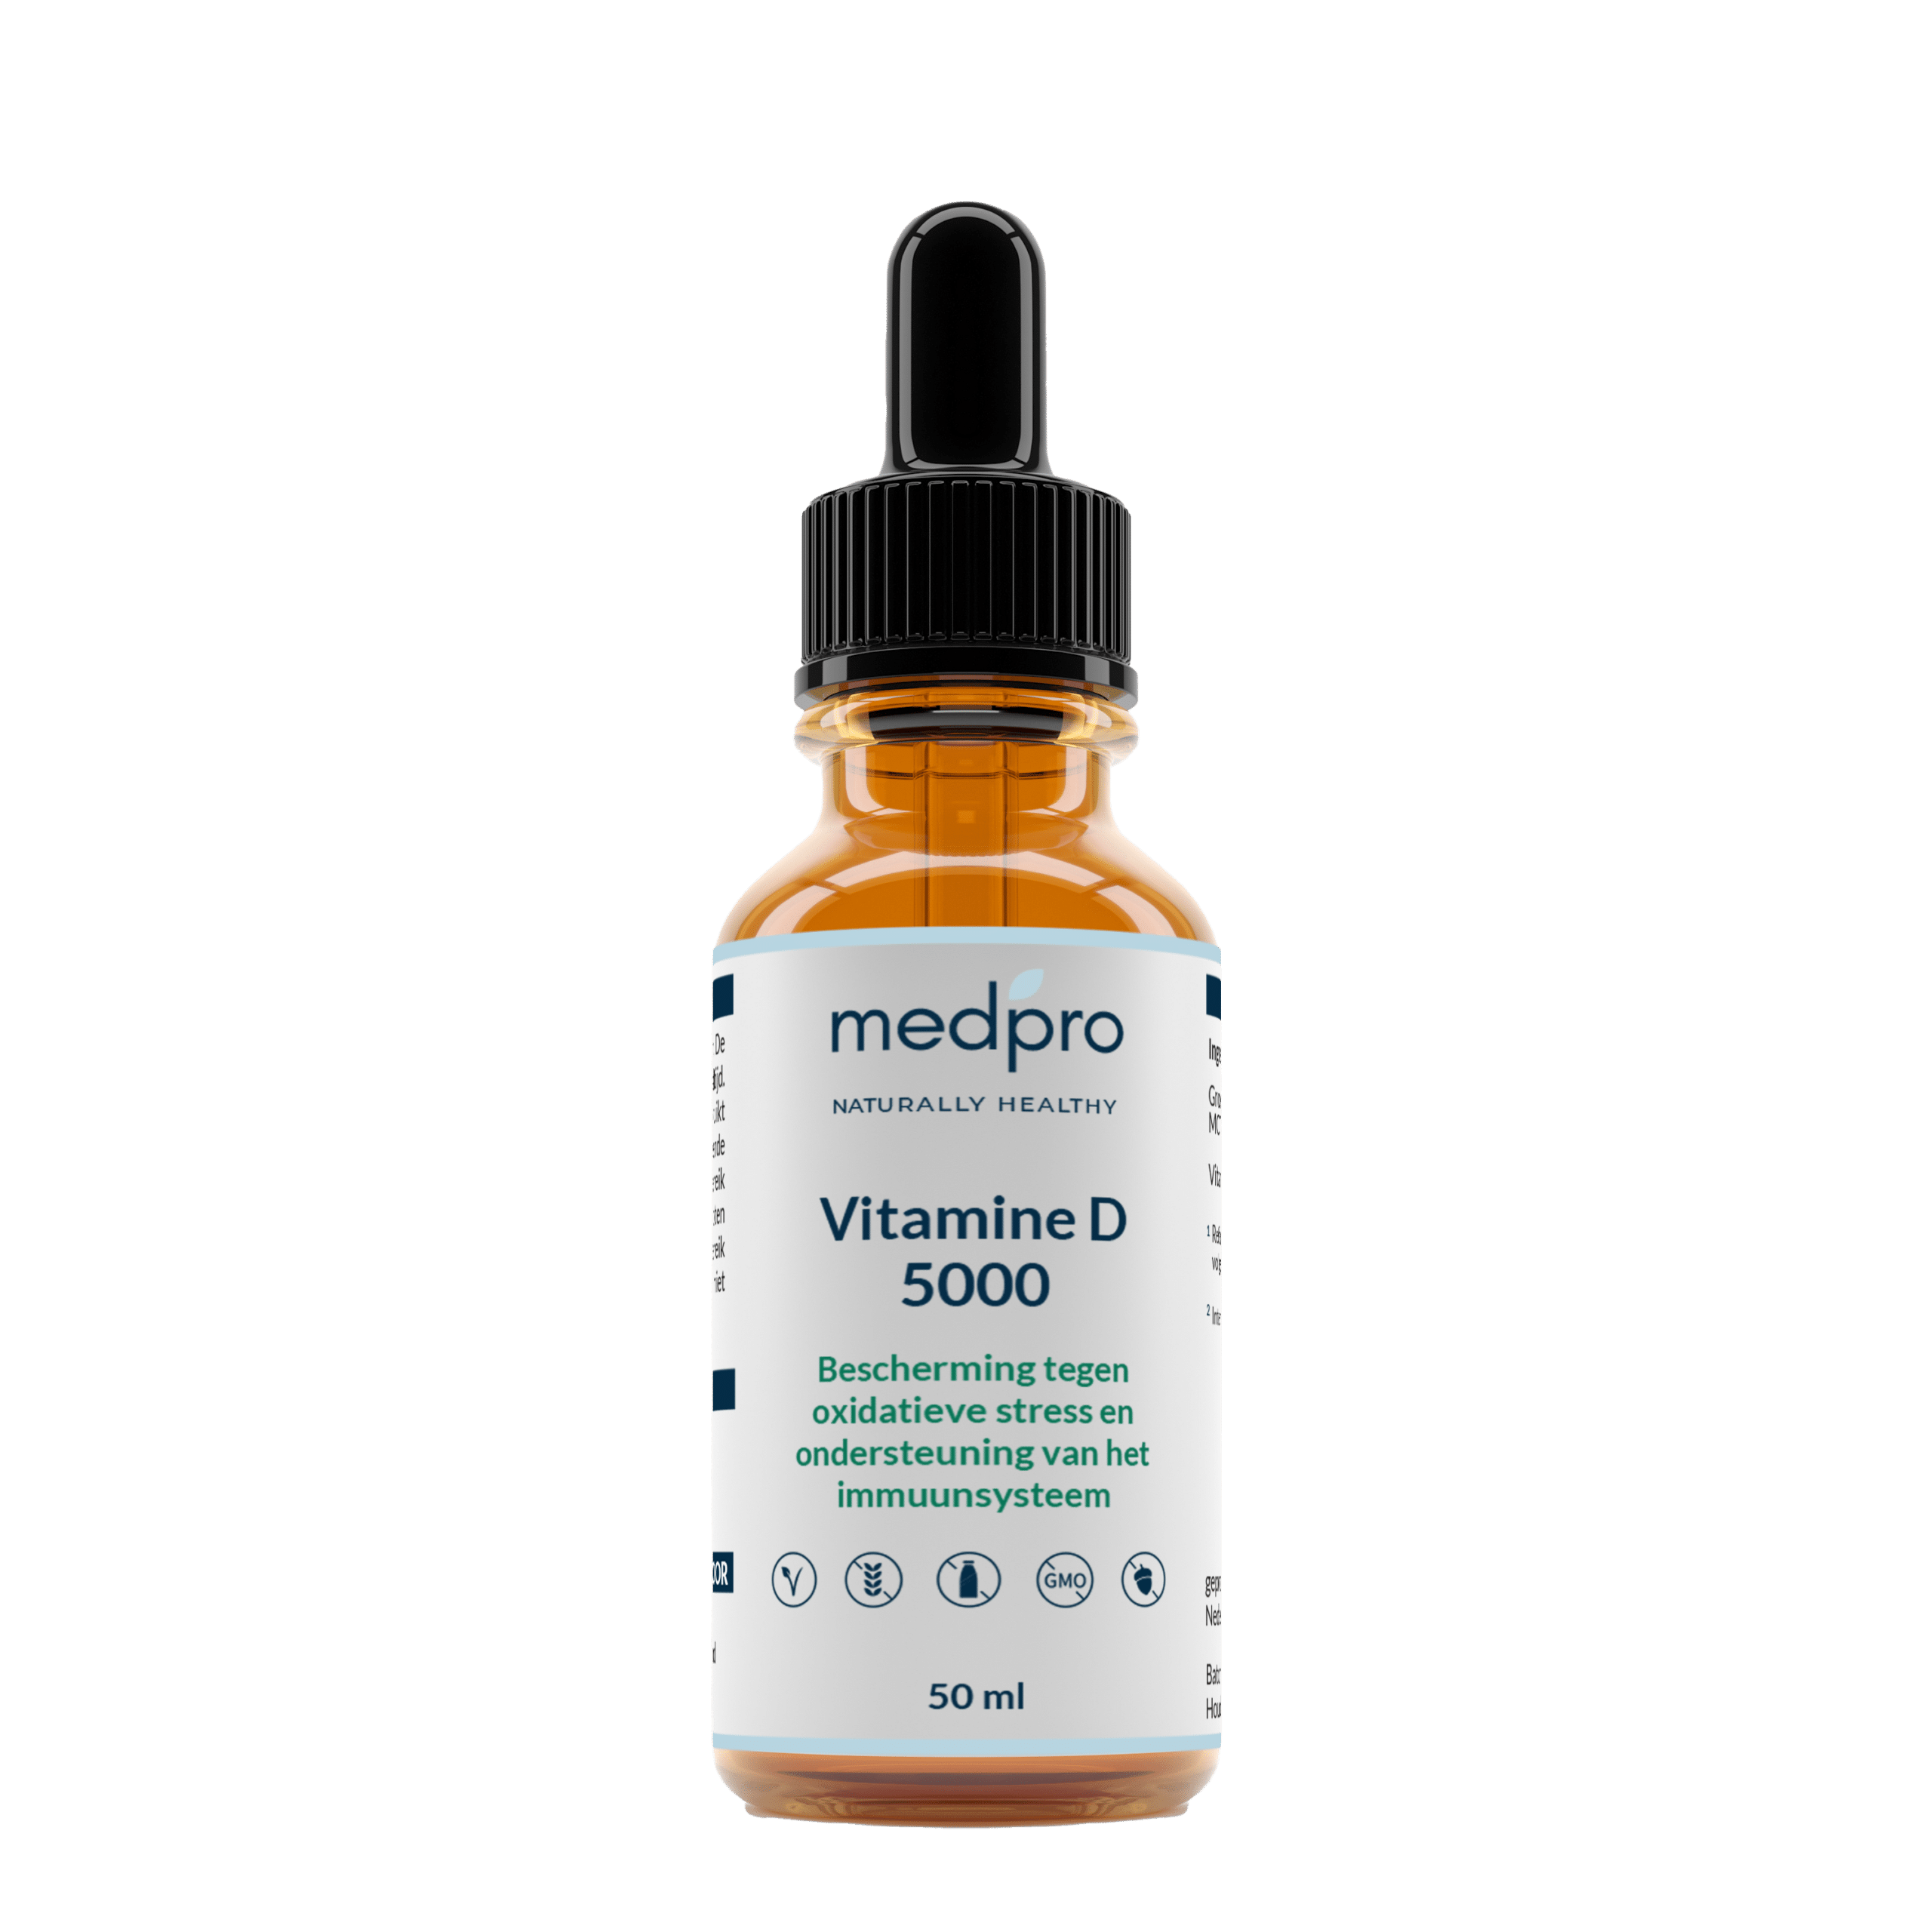 Vitamin-D-5000-NL-ohne-Hintergrund